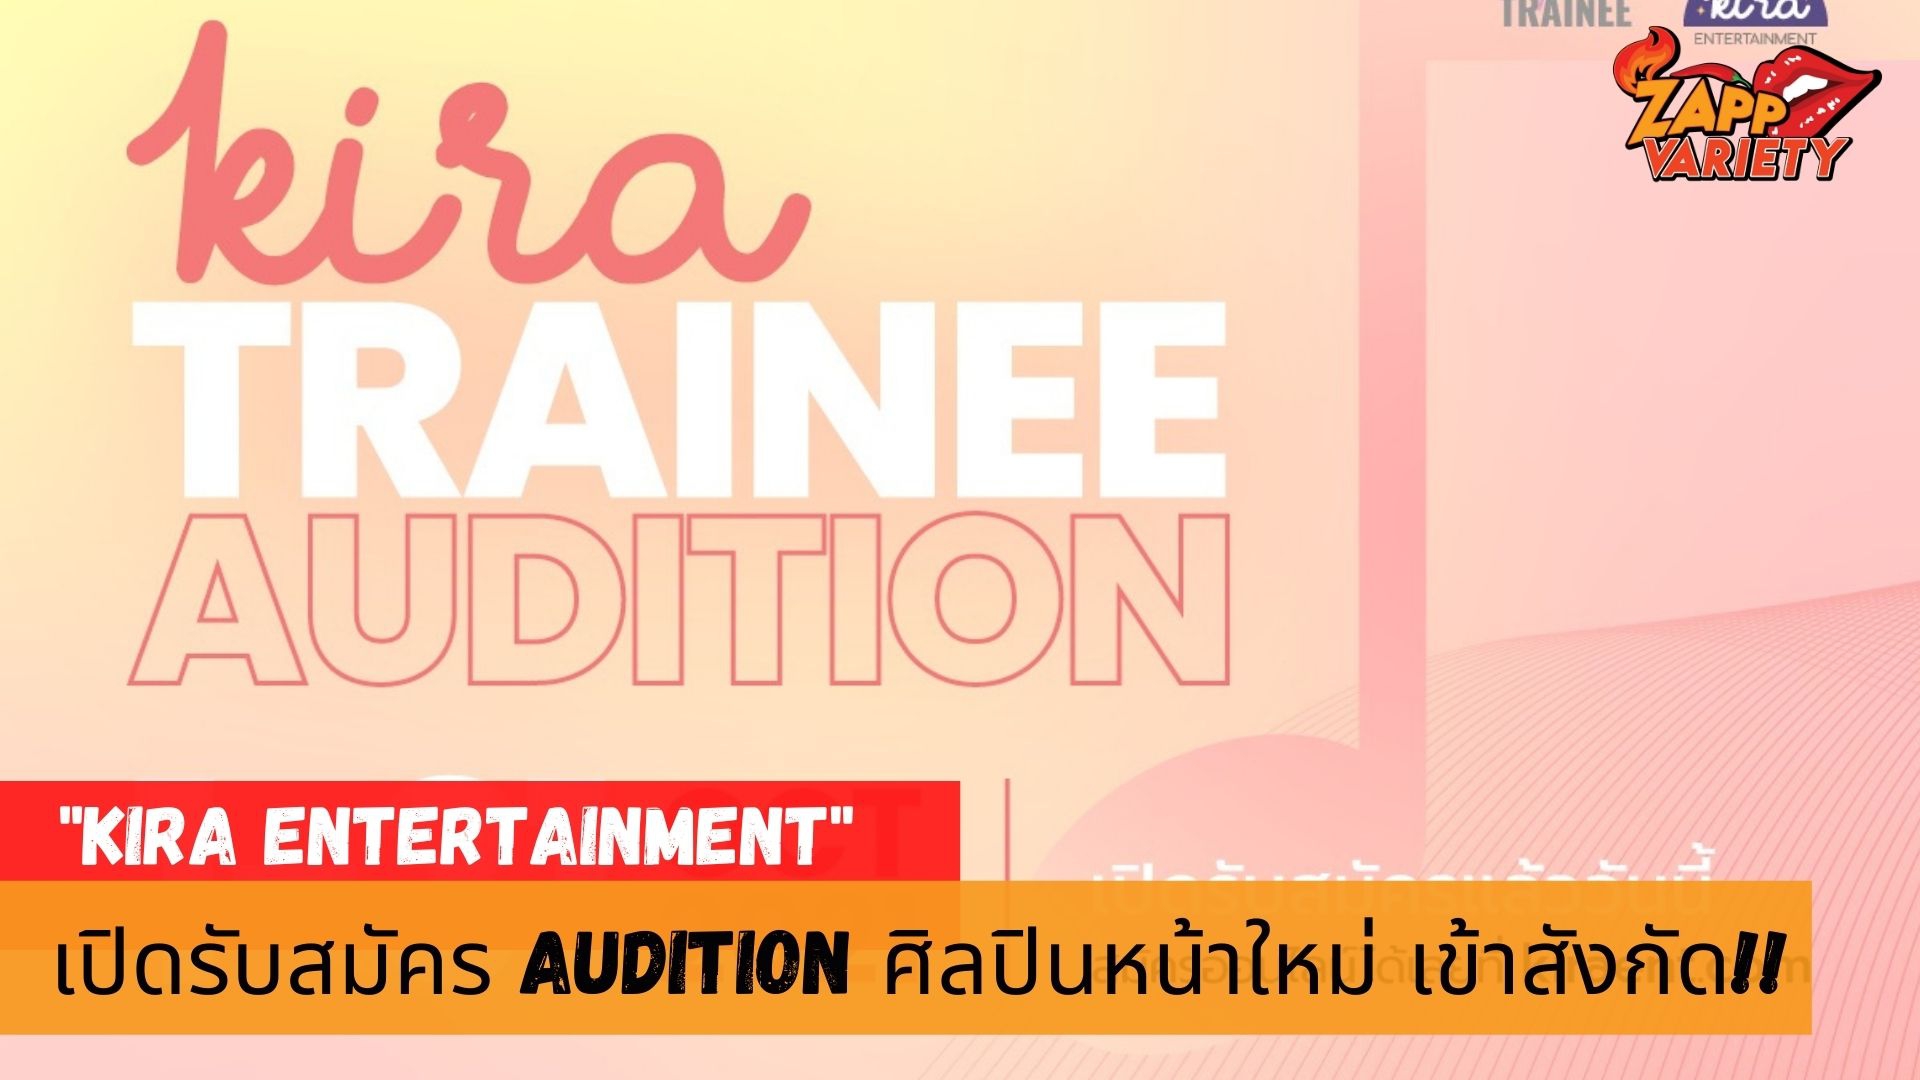 Kira Entertainment บริษัทสร้างสรรค์ความบันเทิงระดับเอเชีย…เปิด Audition เฟ้นหาว่าที่ไอดอลชายหน้าใหม่ของวงการ!!! 